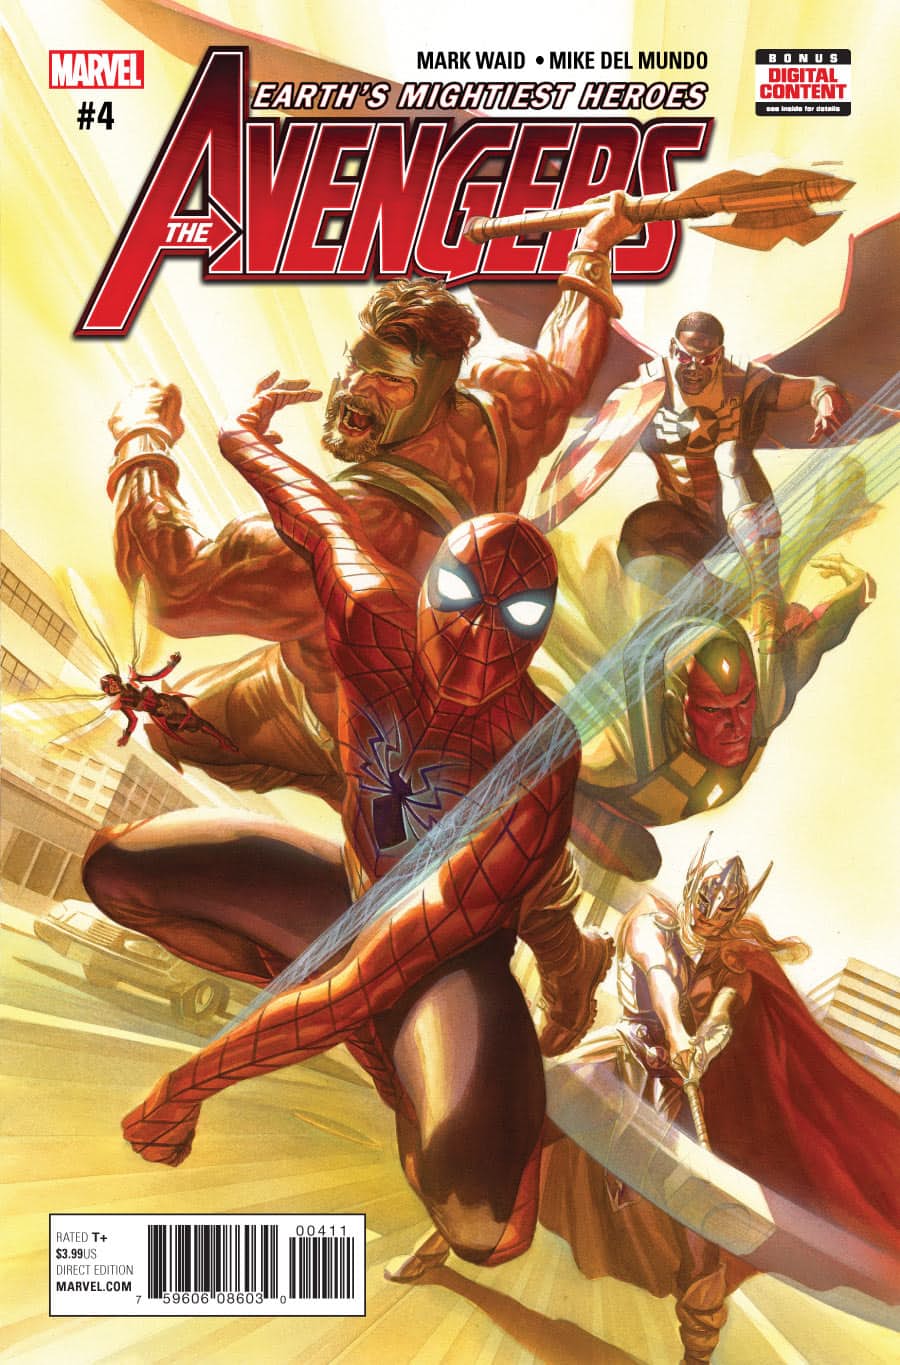 Avengers Vol 7 4 | Marvel Database | Fandom